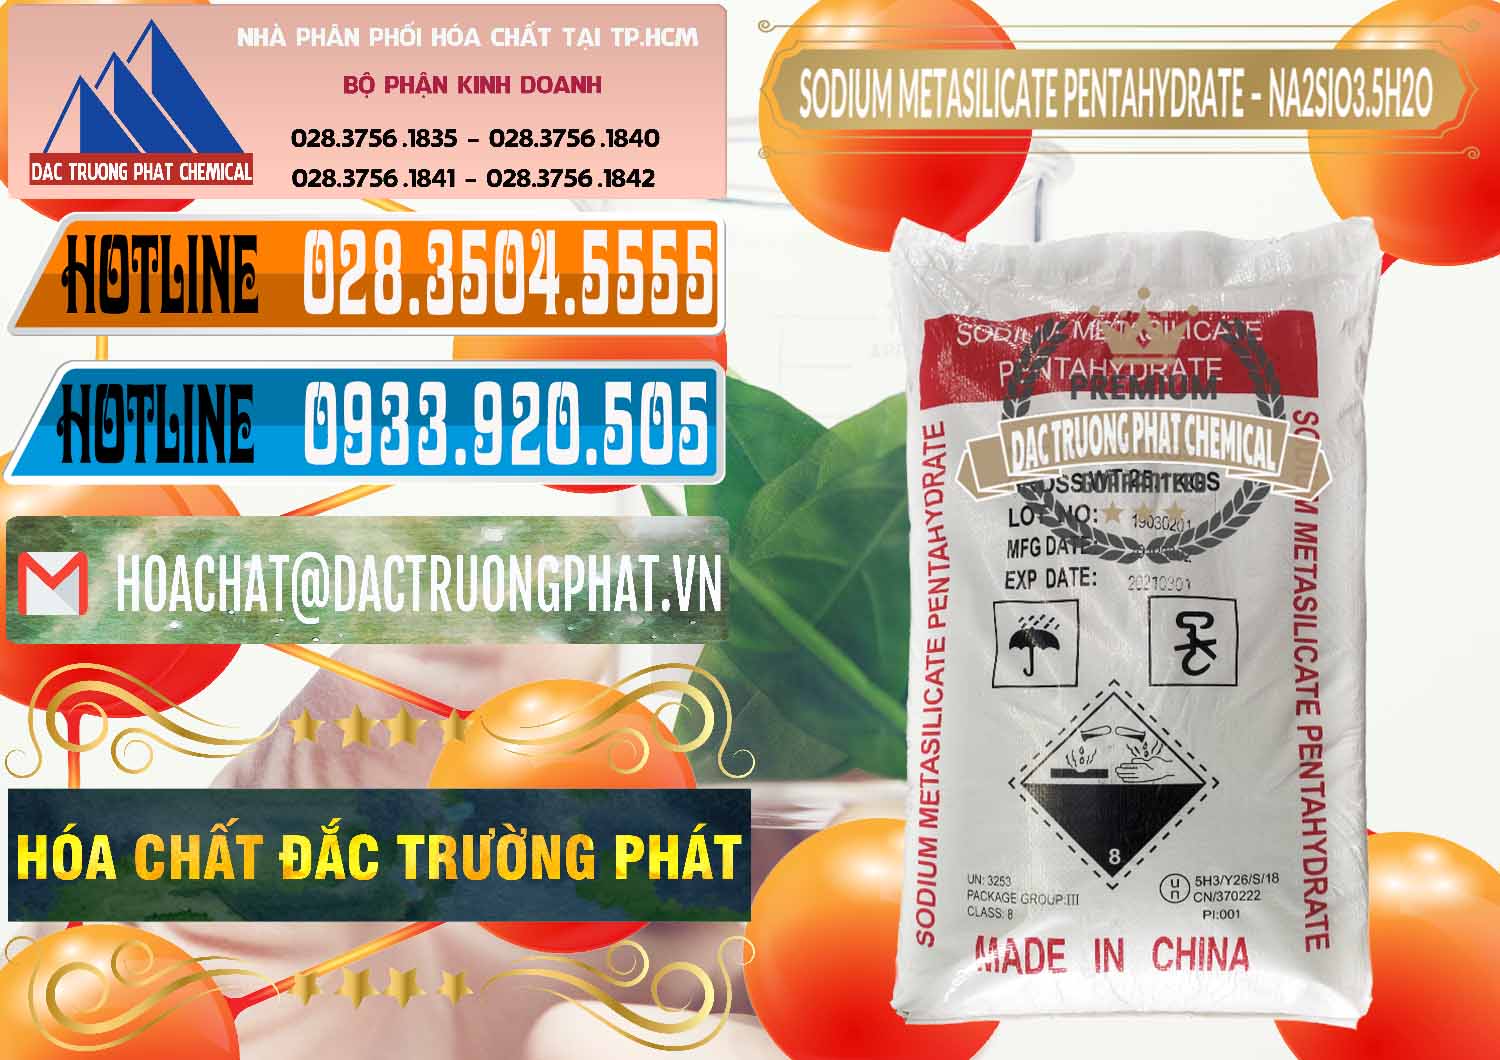 Chuyên kinh doanh và bán Sodium Metasilicate Pentahydrate – Silicate Bột Trung Quốc China - 0147 - Cty phân phối và kinh doanh hóa chất tại TP.HCM - stmp.net